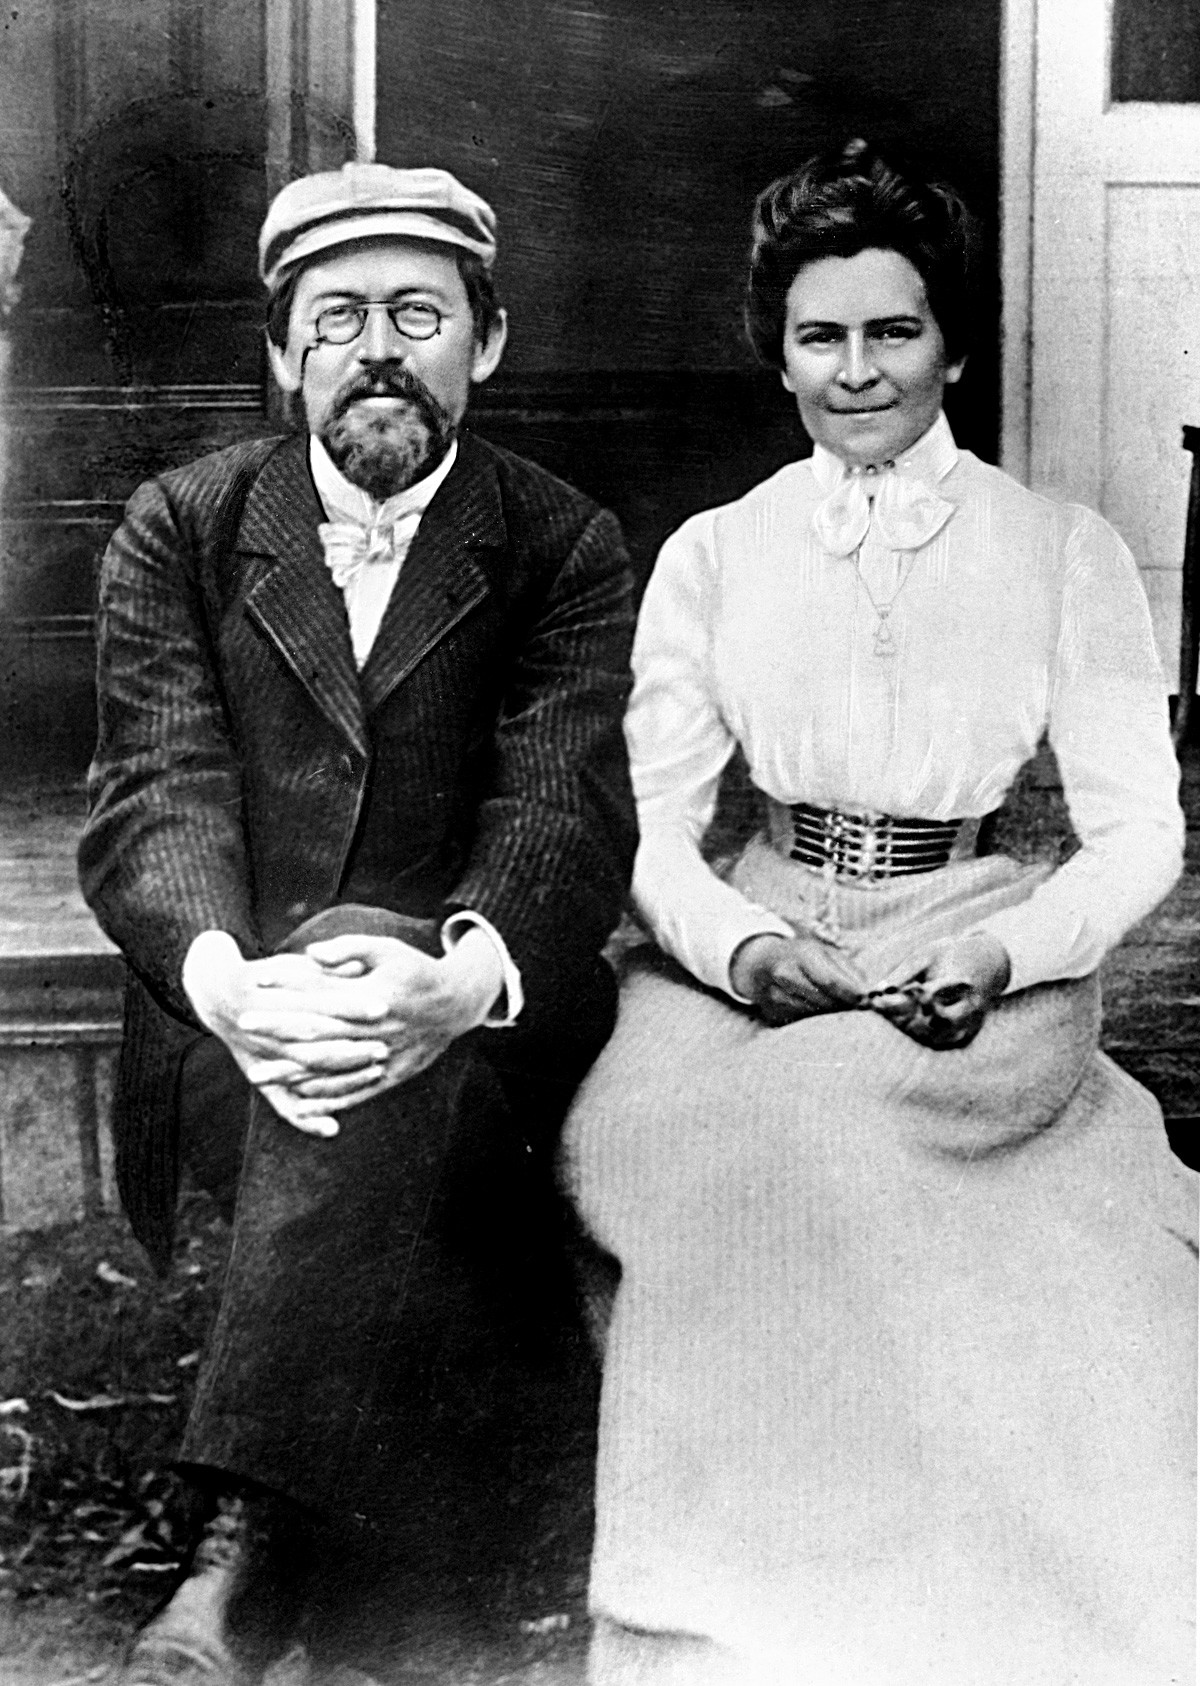 Репродукција фотографије руског писца Антона Чехова и његове жене, глумице Олге Книпер-Чехове.